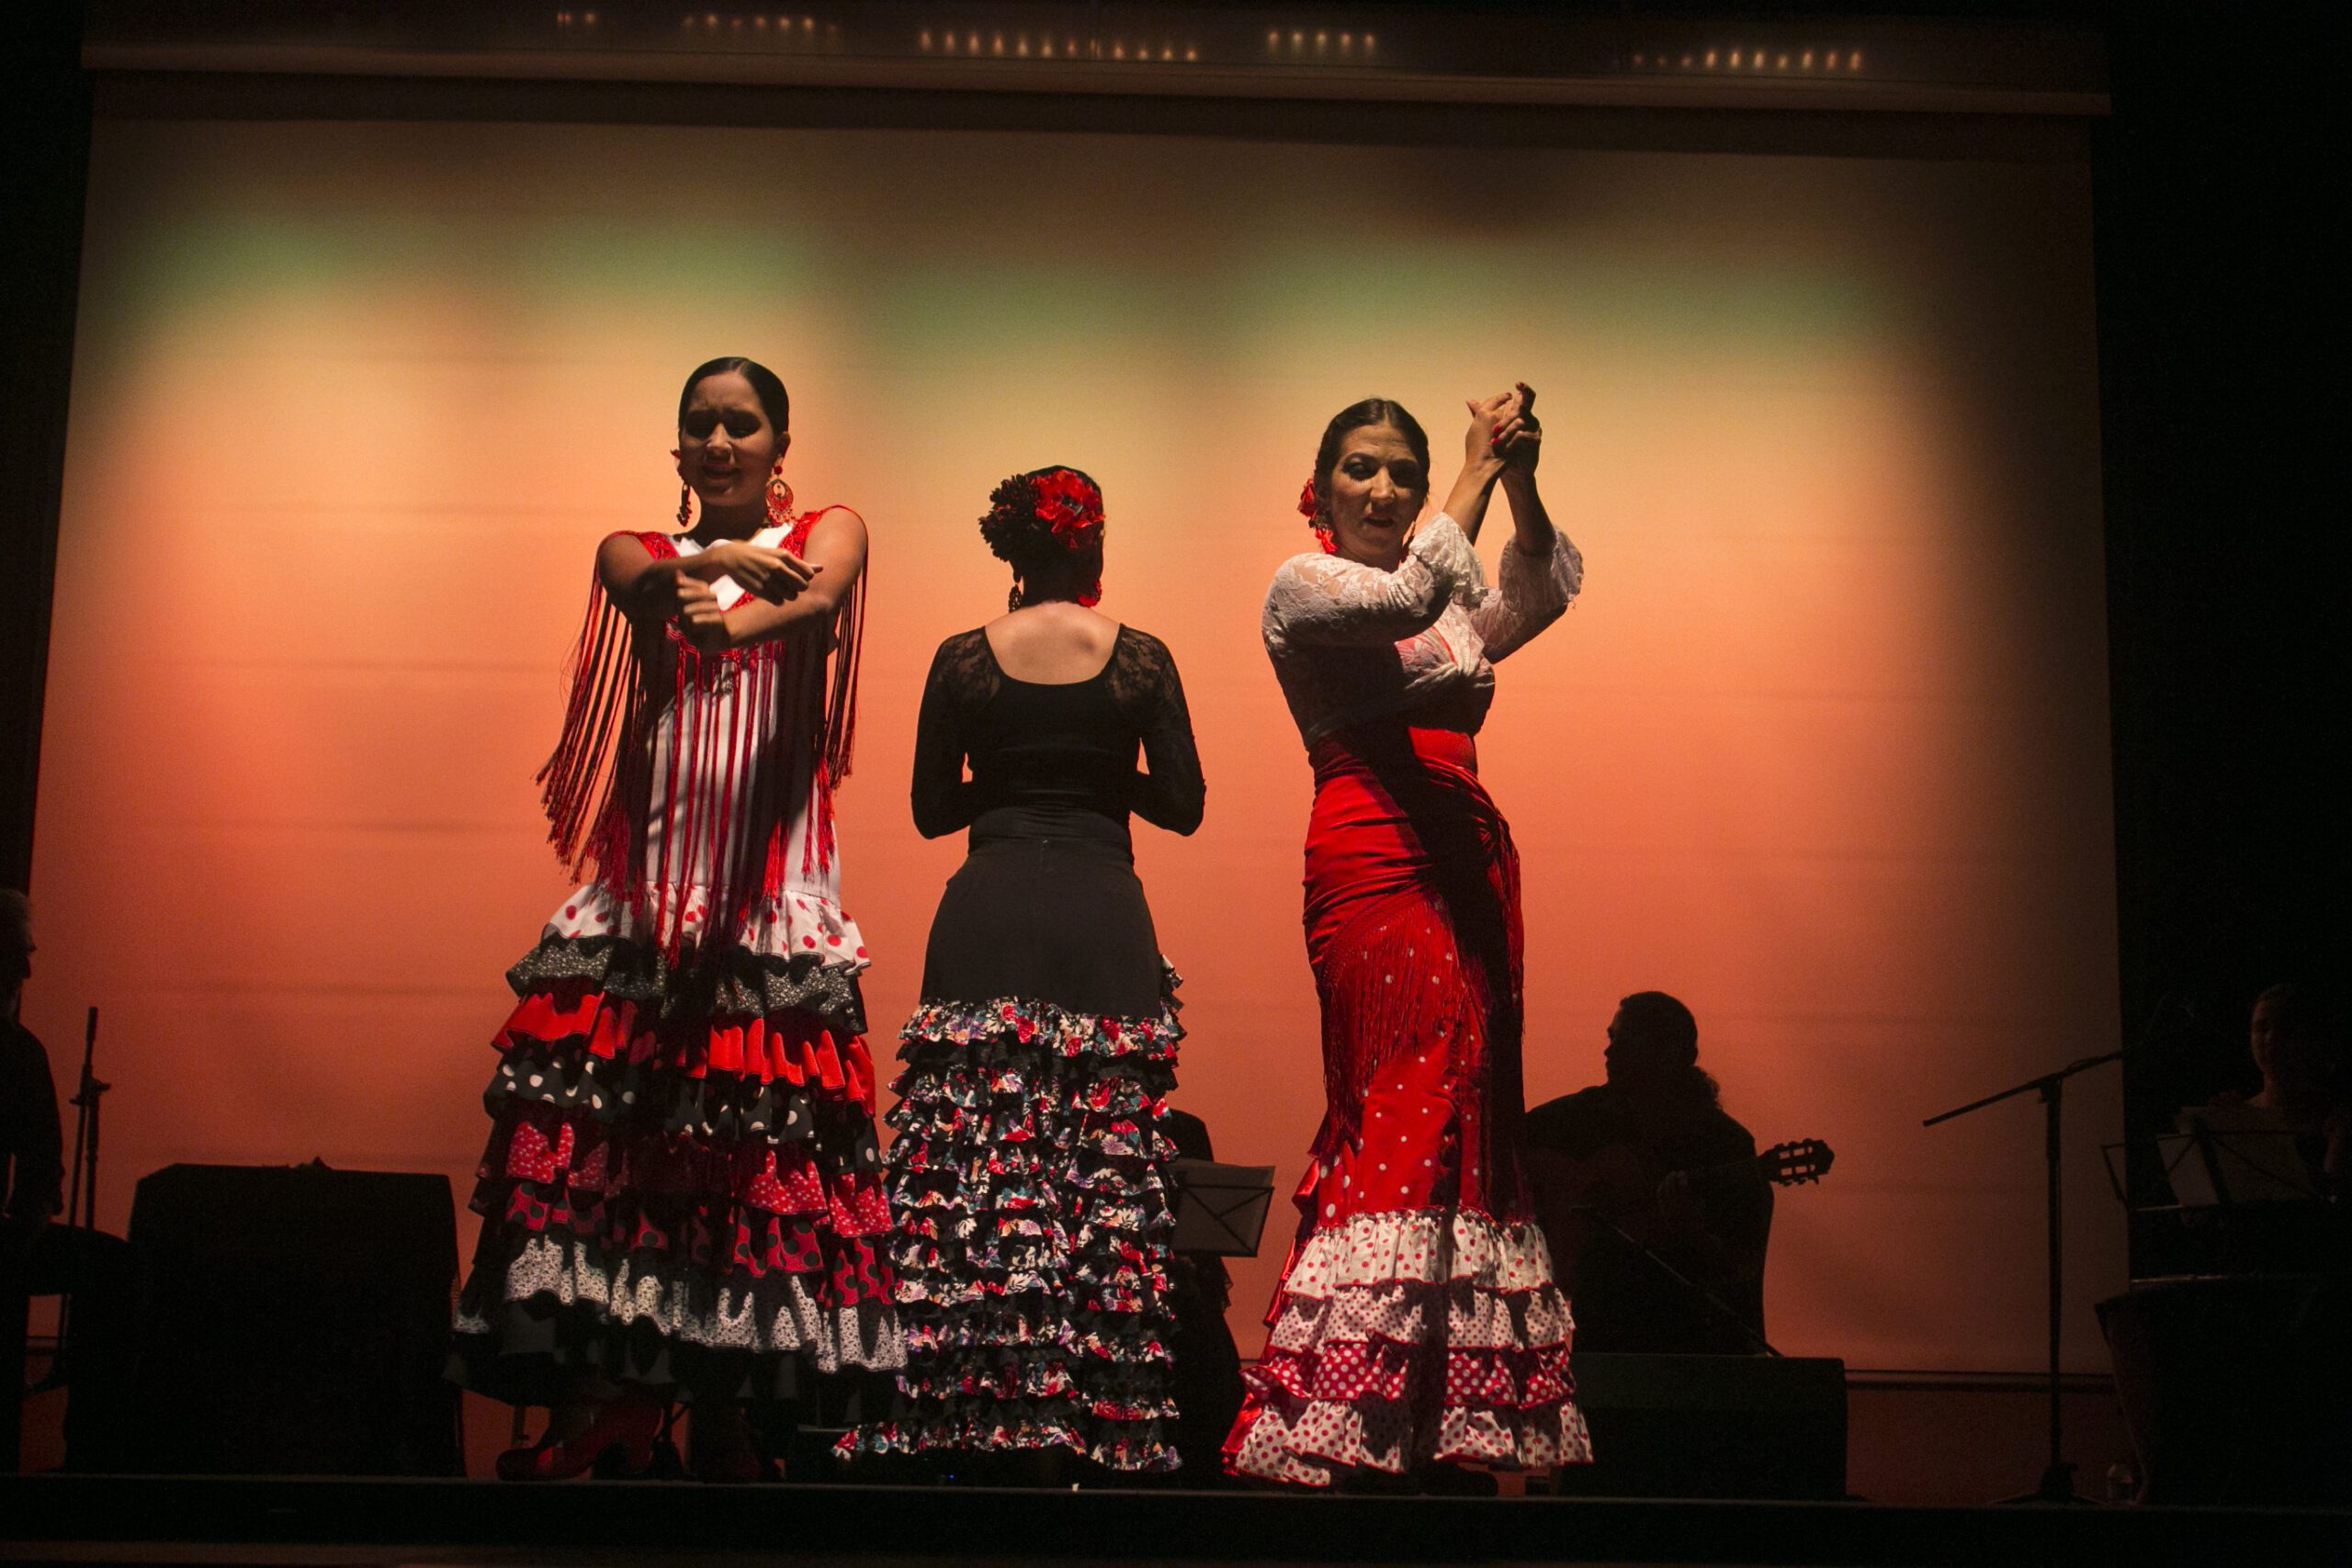  XIII versión Festival Flamenco ciudad de Medellín.